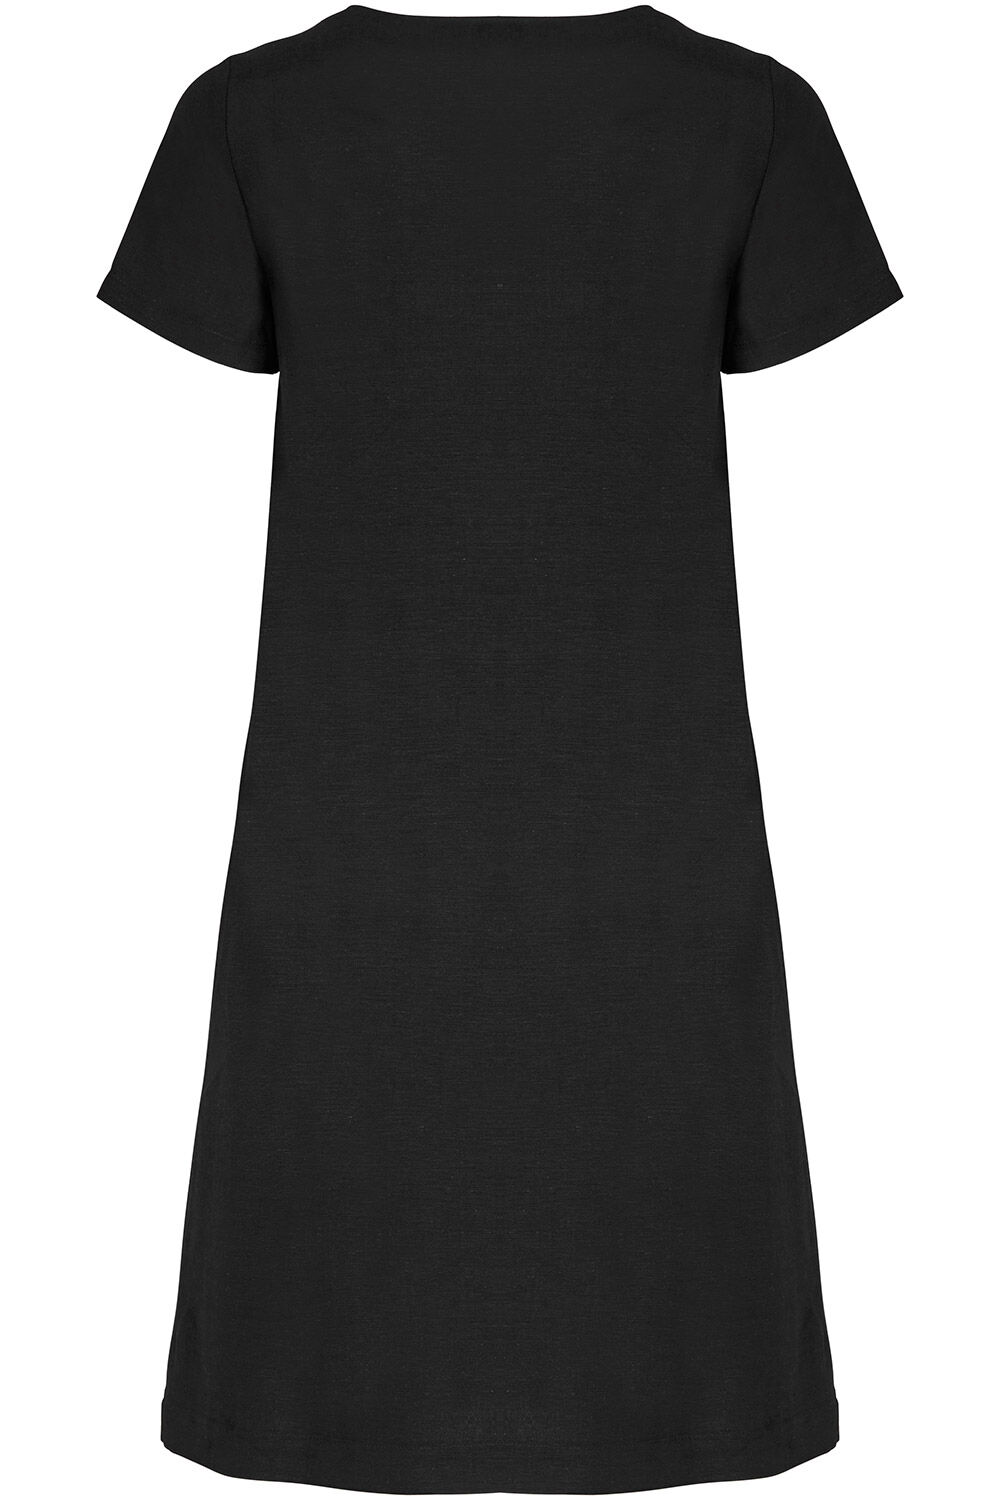 black linen shift dress uk